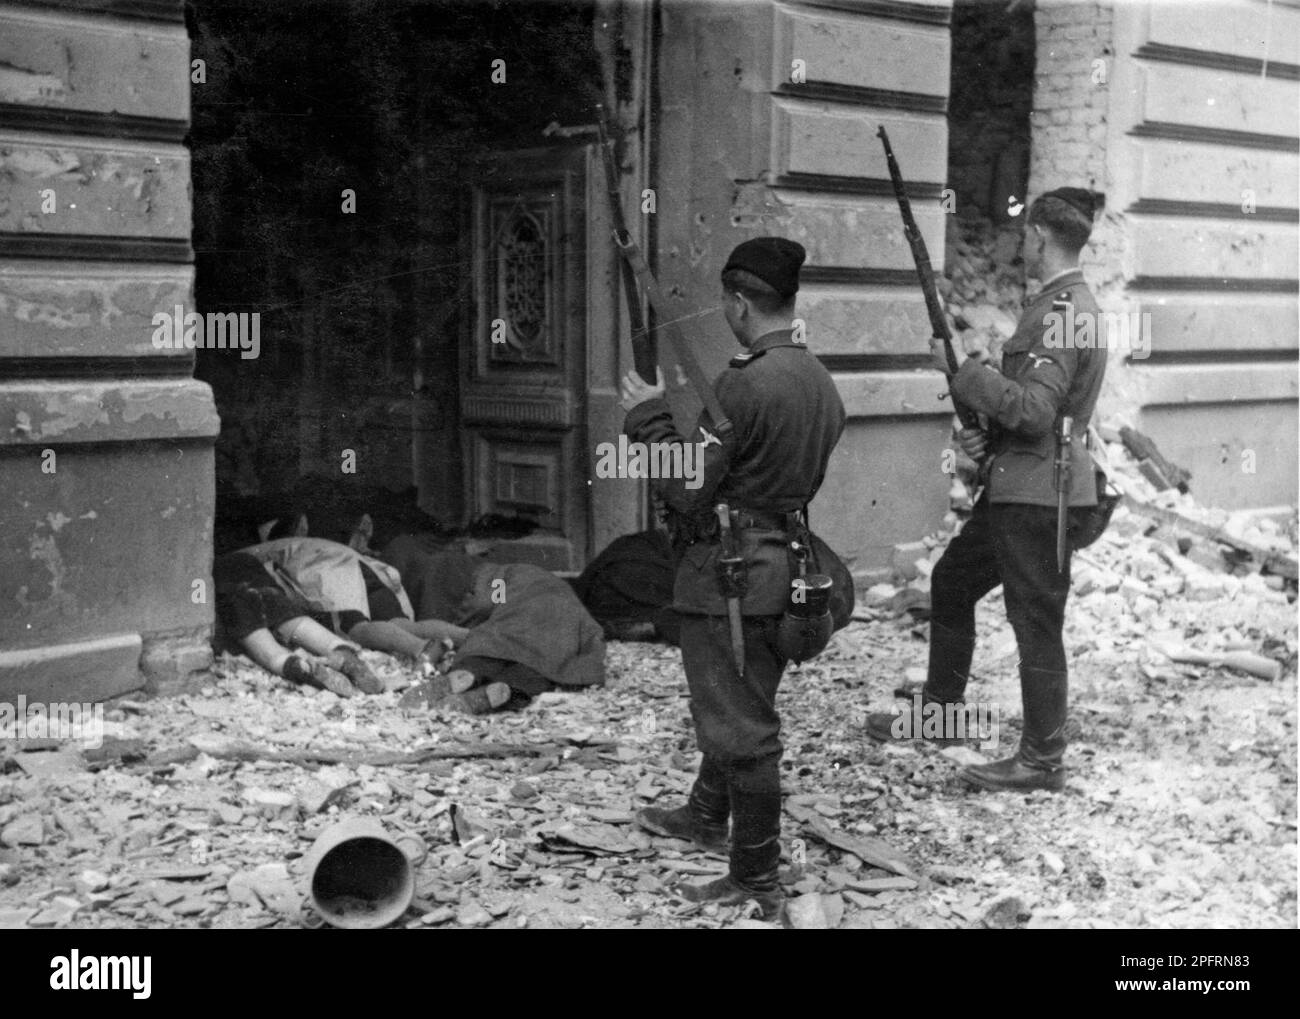 En janvier 1943, les nazis sont arrivés pour arrondir les Juifs du ghetto de Varsovie les Juifs, résolus au combattre, ont pris la SS avec des armes maison et primitives. Les défenseurs ont été exécutés ou déportés et la zone du ghetto a été systématiquement démolie. Cet événement est connu sous le nom de soulèvement du ghetto. Cette image montre les corps des Juifs exécutés après leur capture. Cette image est tirée du dossier photographique allemand de l'événement, connu sous le nom de rapport Stroop. Banque D'Images